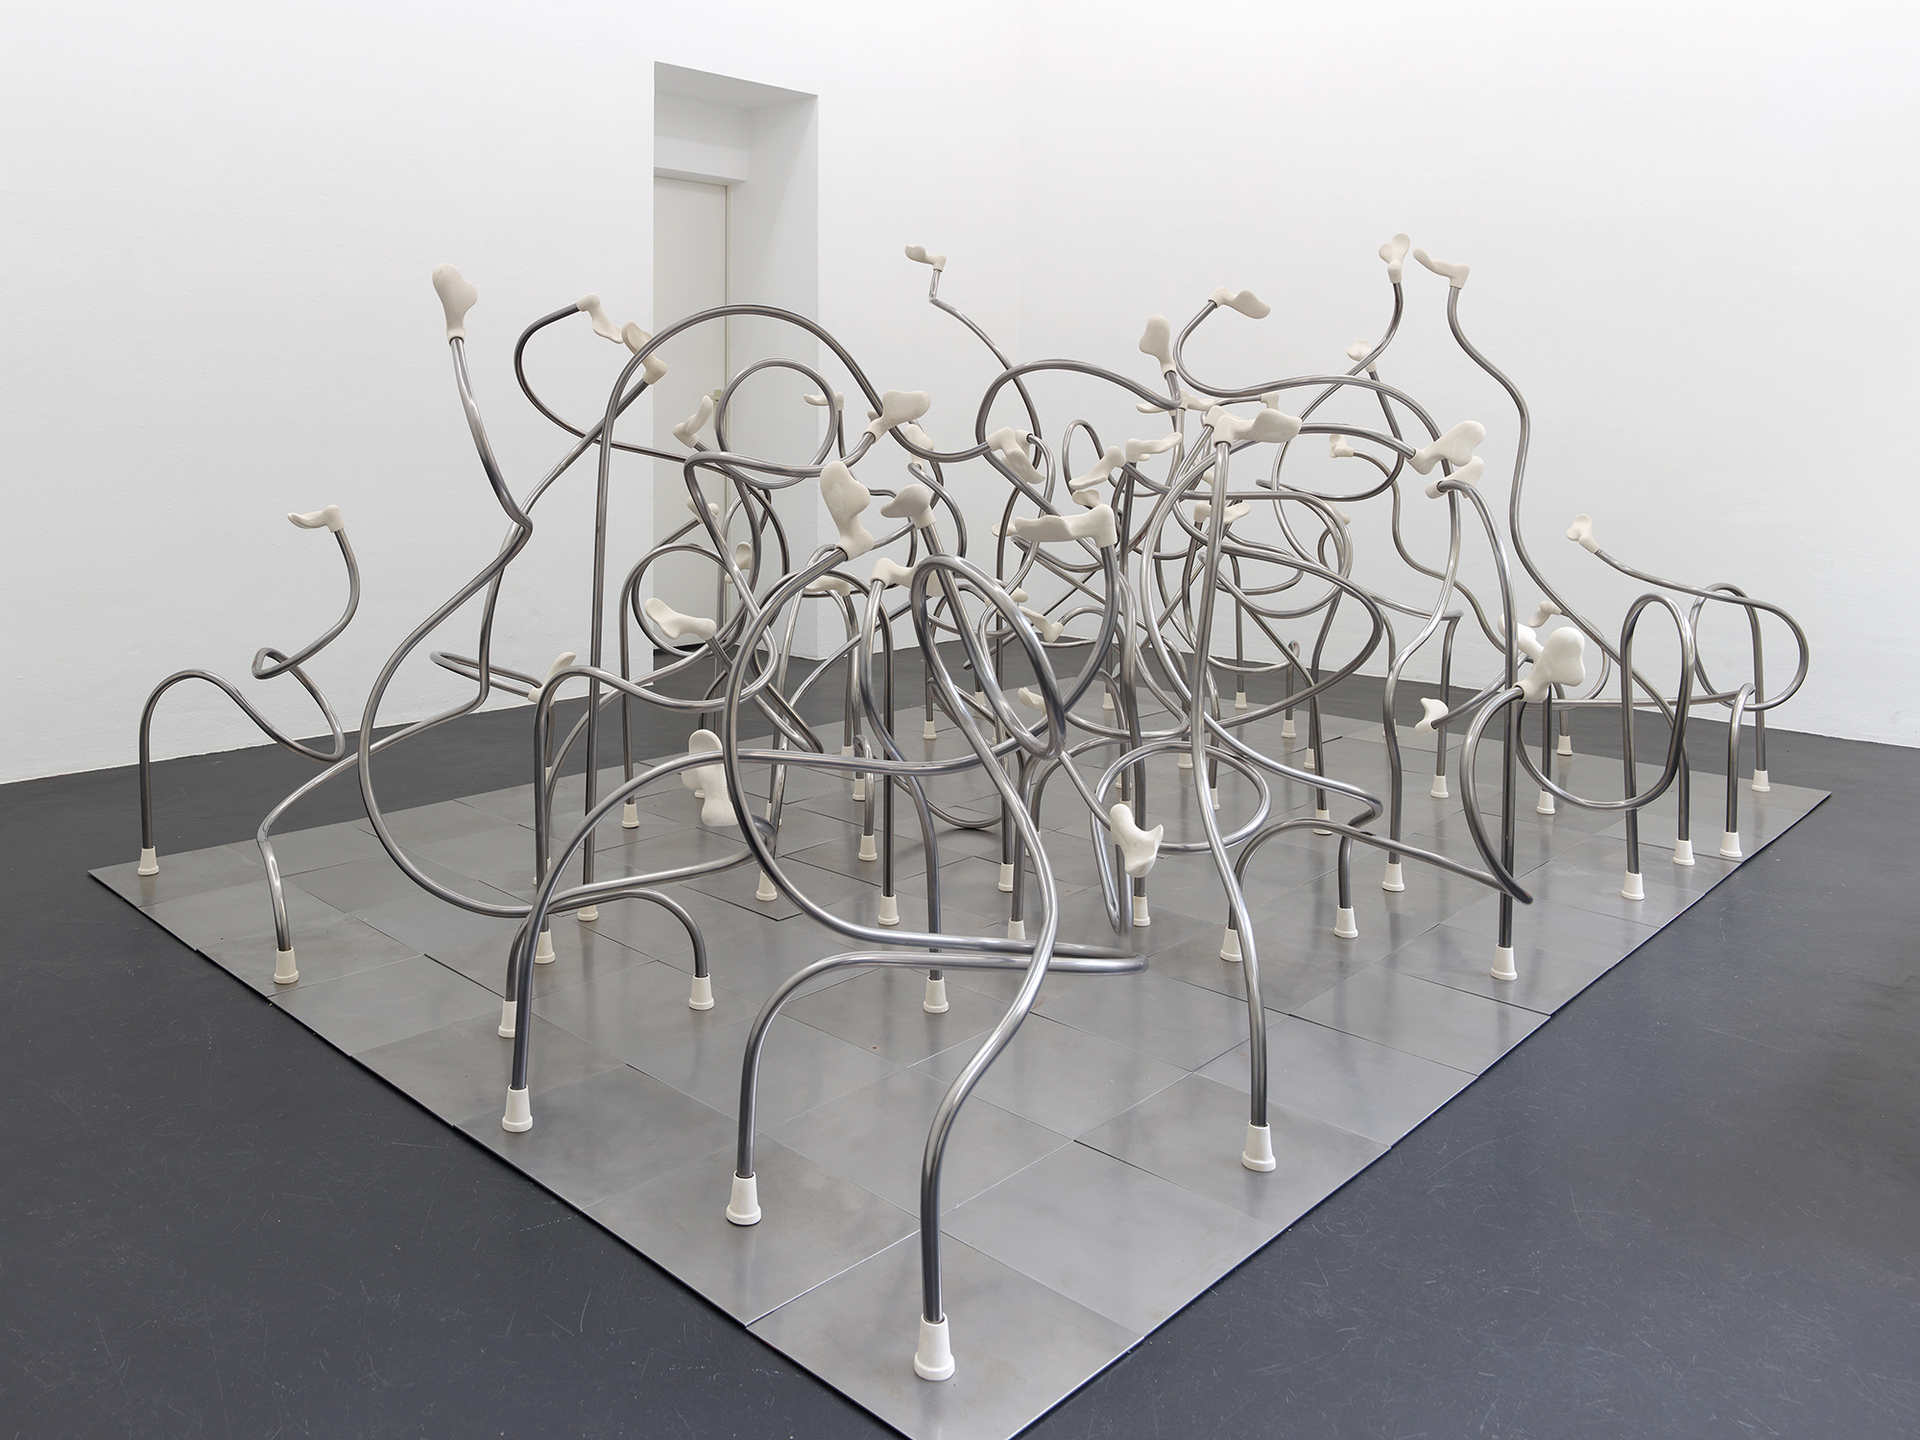 Christian Theiß, Schwanensee, 2020, steel, polymer, 360 x 240 cm